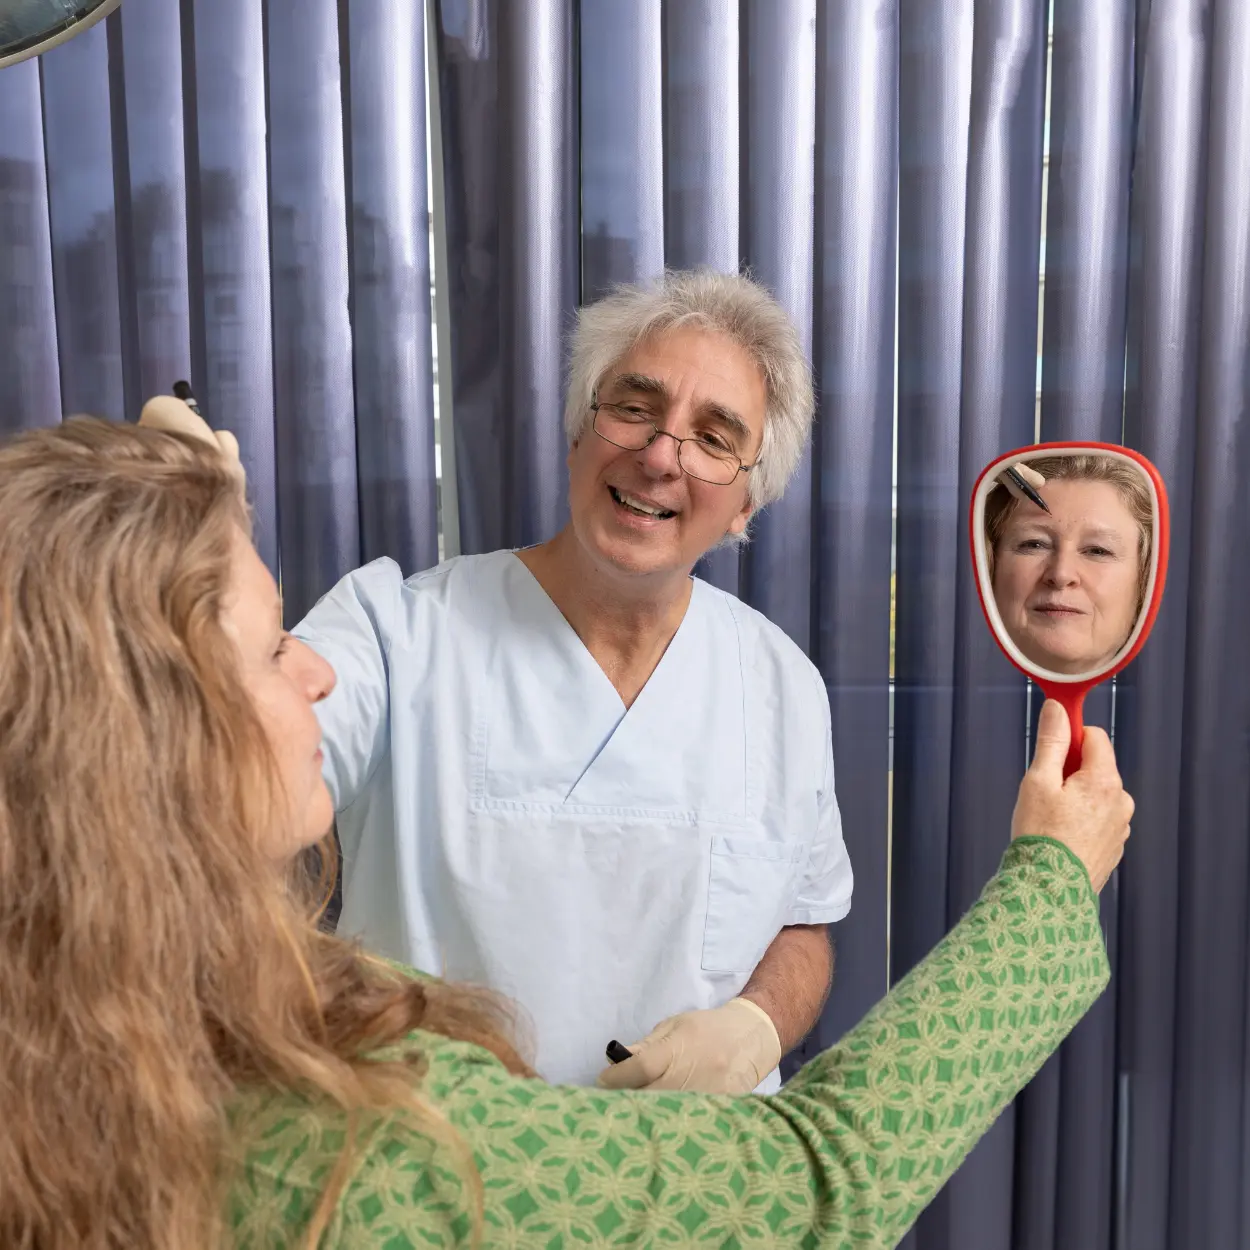 Patientin hält Spiegel hoch während Dr Wahn etwas erklärt | Gemeinschaftspraxis Dr. Dr. Jürgen Wahn - Dr. Dr. Tassilo Illg